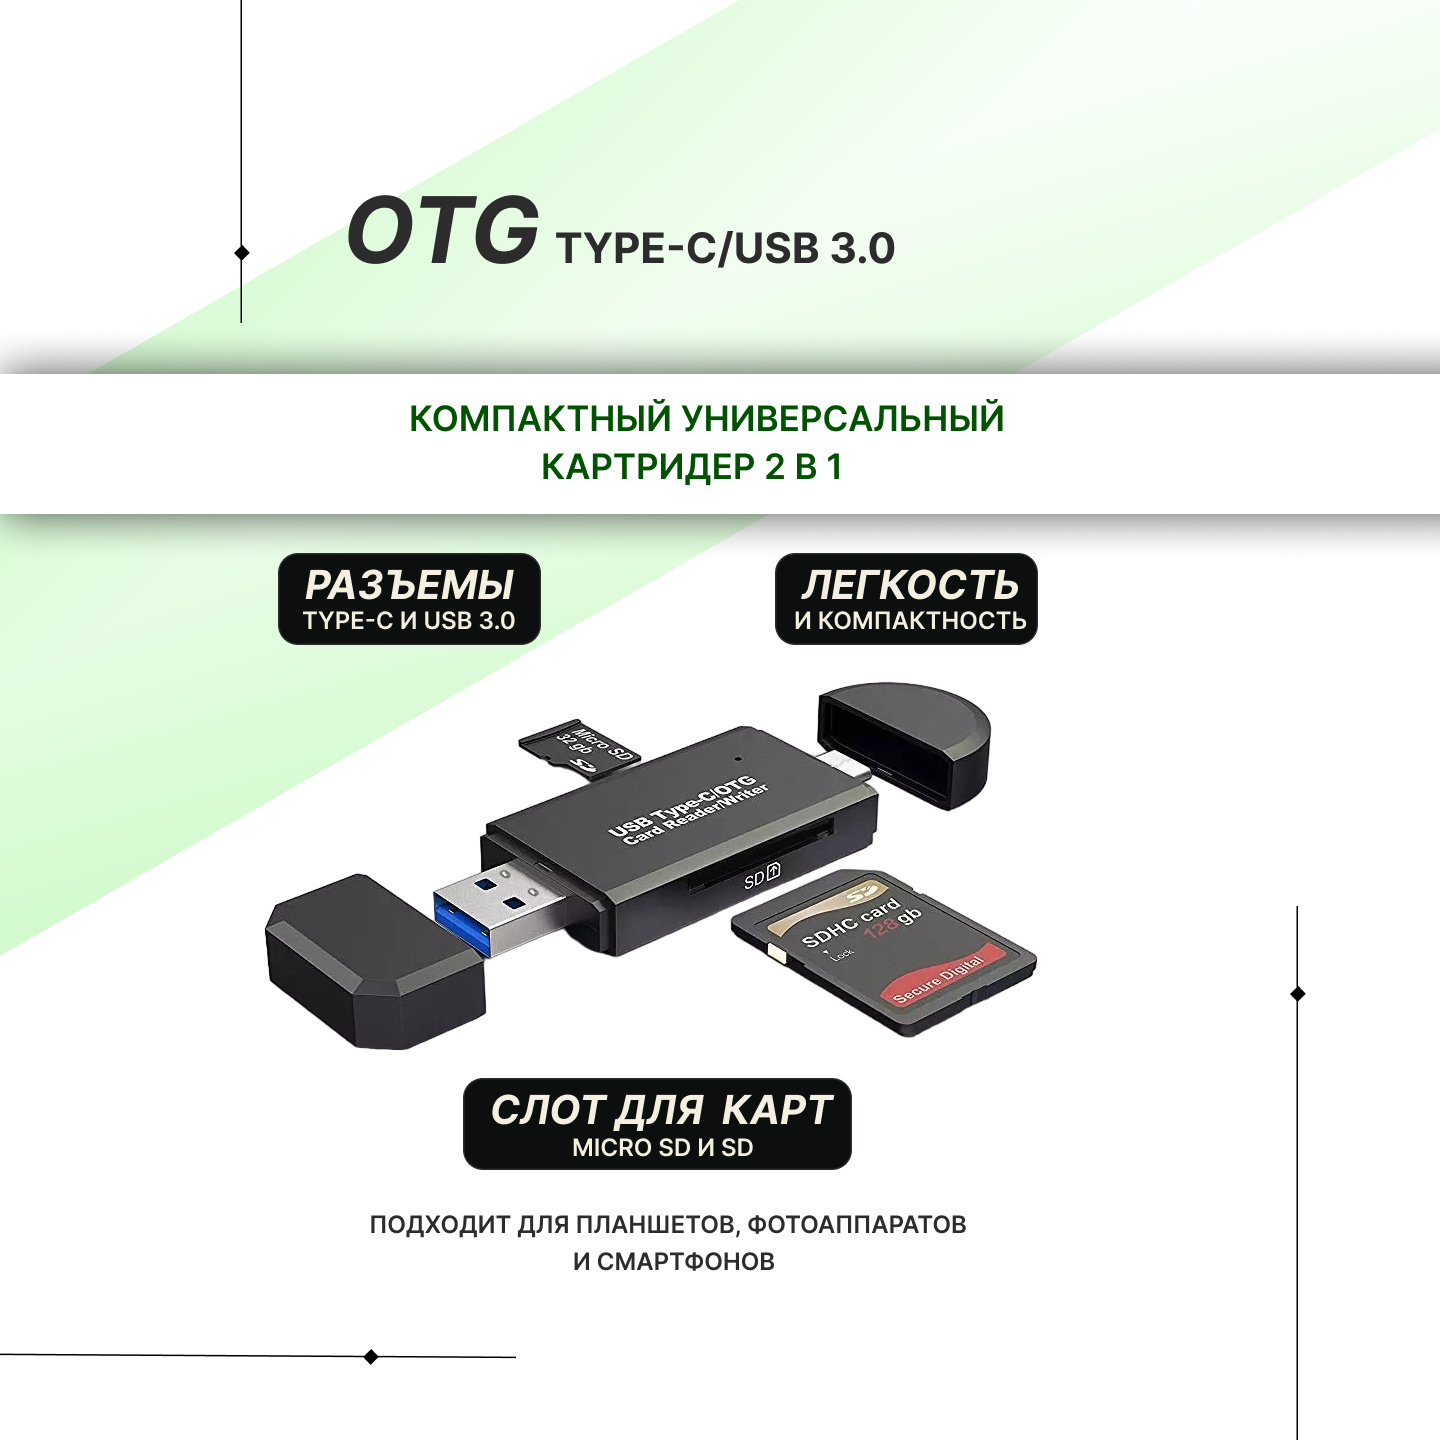 Картридер 2 в 1 OTG Type-C/USB 3.0 для карт micro-sd/SD